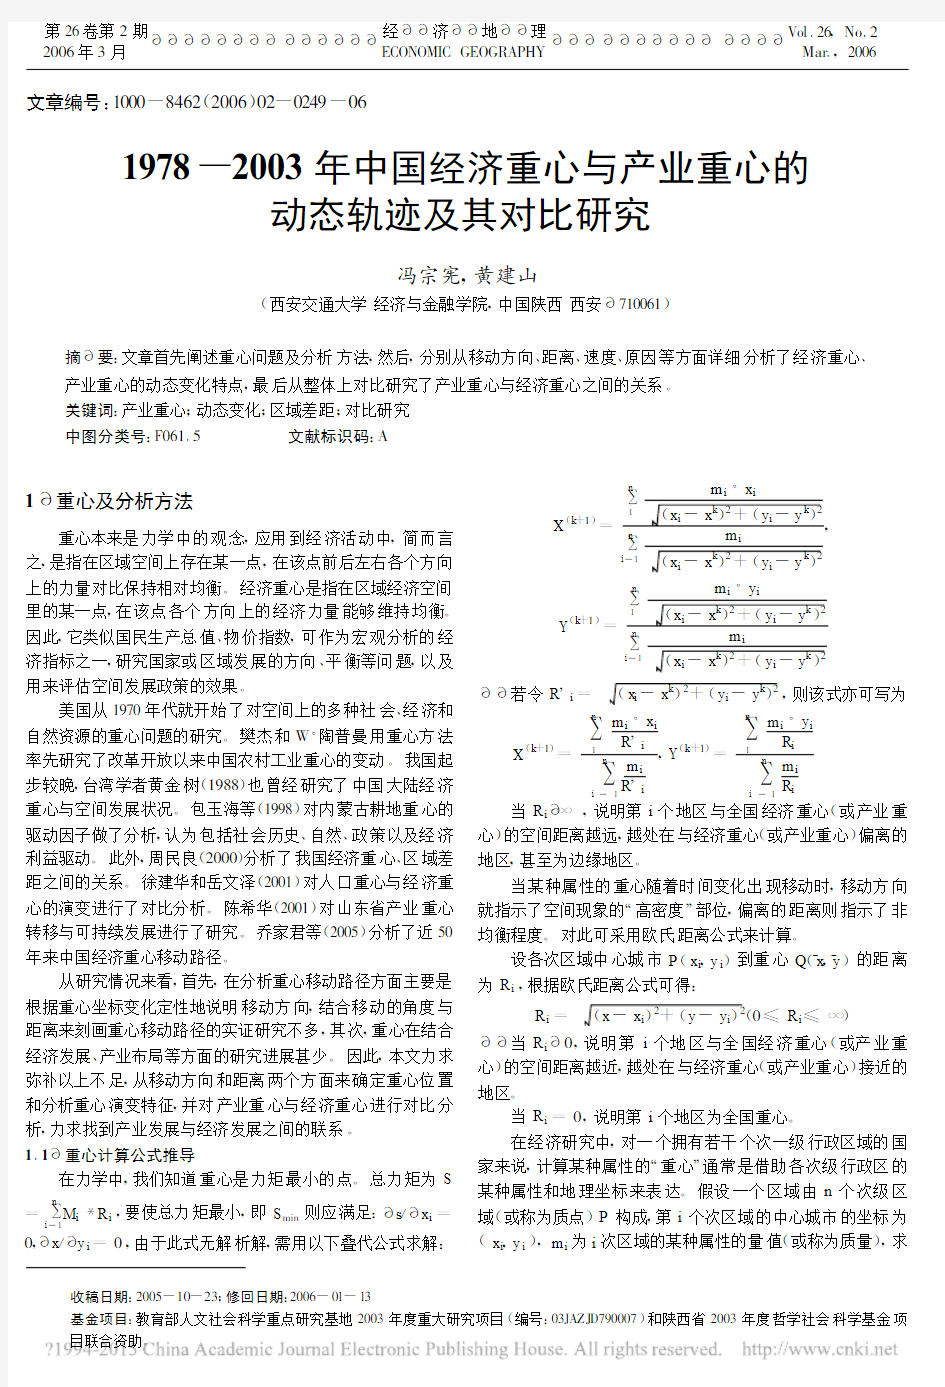 1978_2003年中国经济重心与产业重心的动态轨迹及其对比研究_冯宗宪